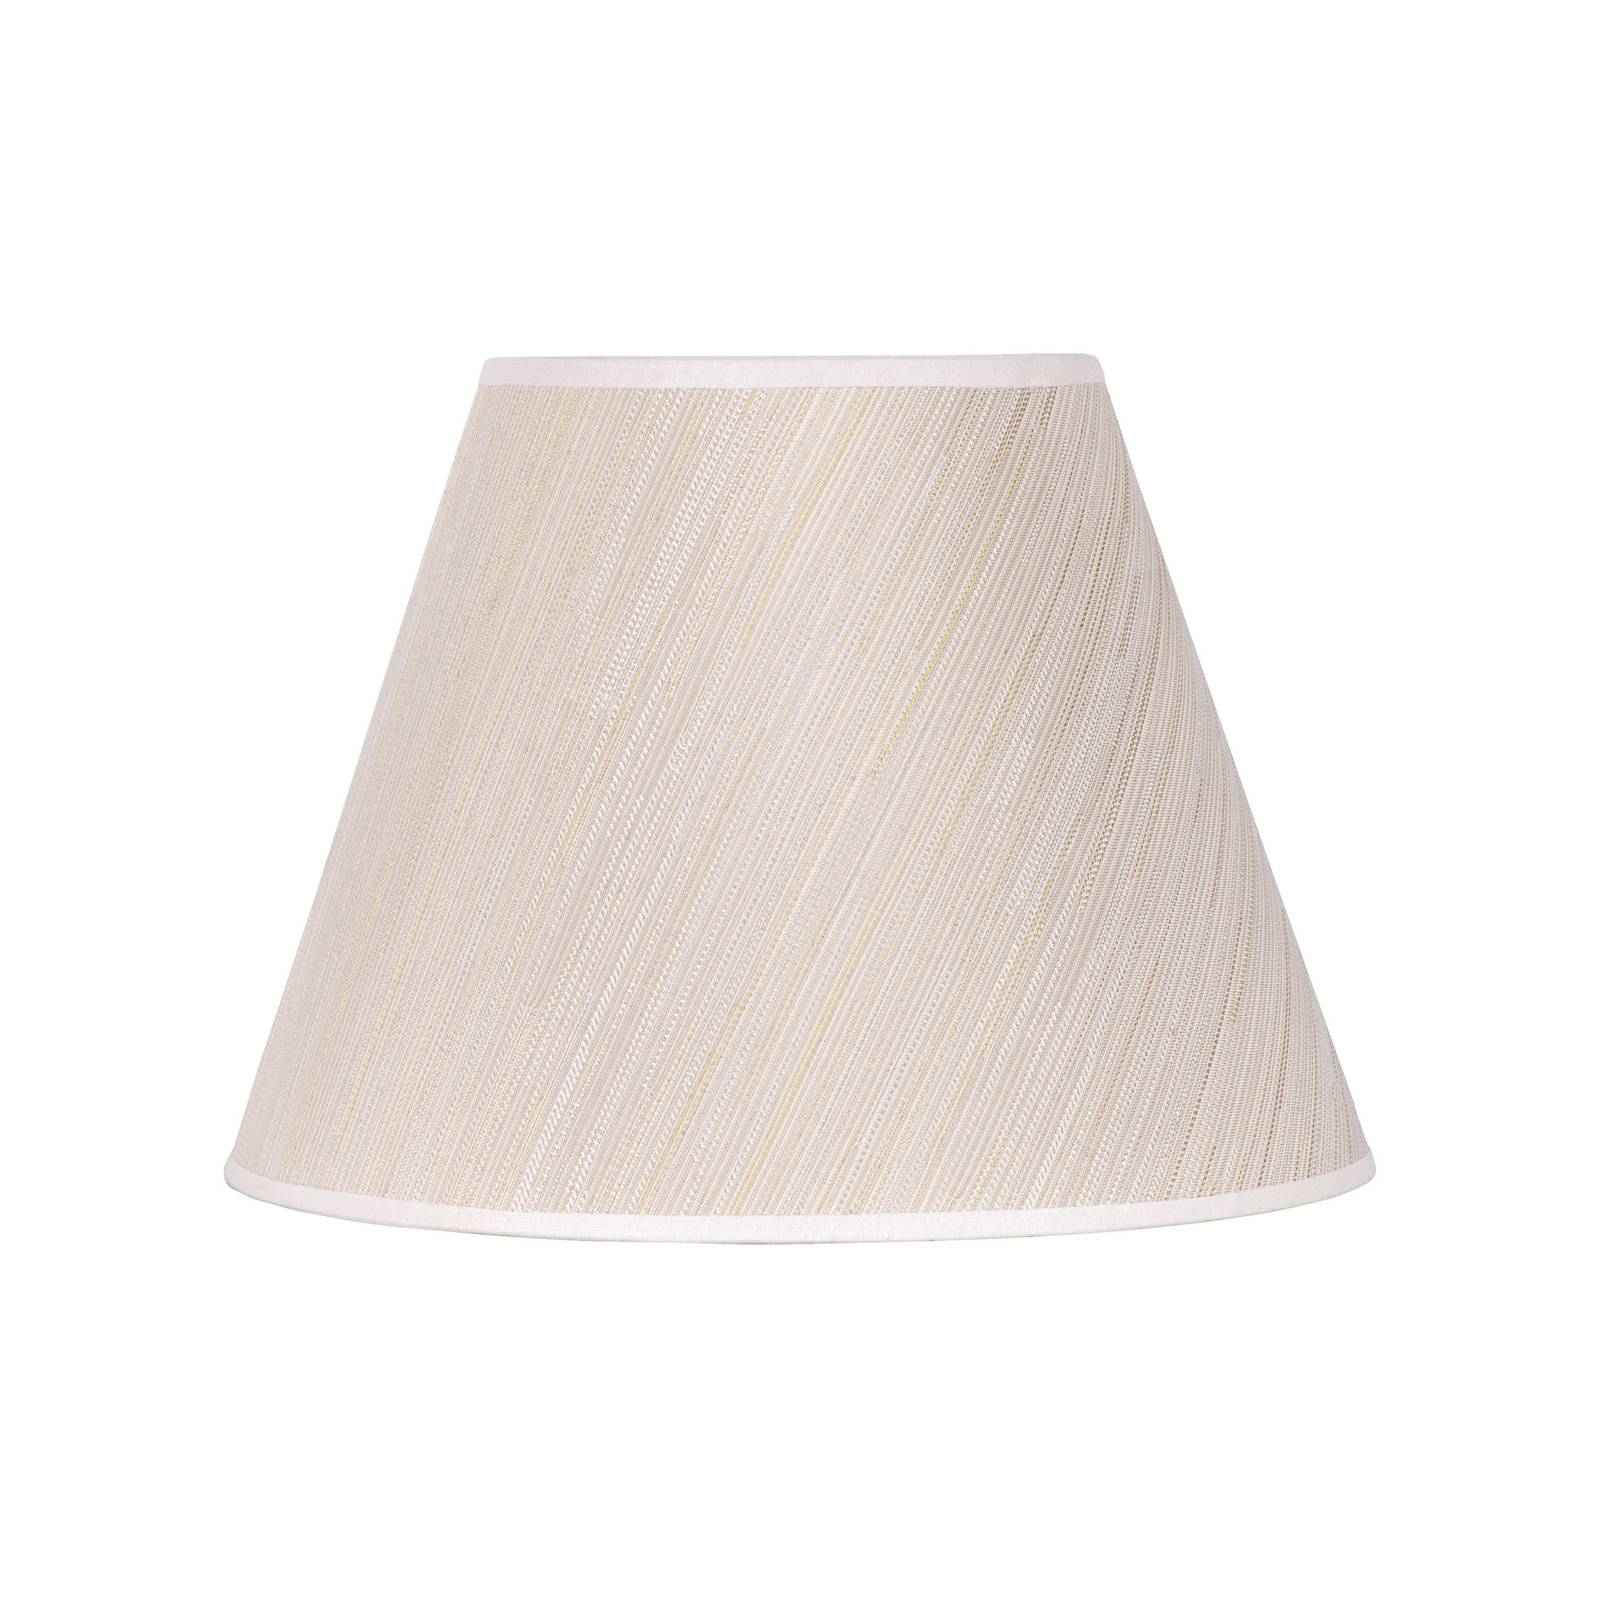 Sofia lámpaernyő 21 cm magas, fehér/arany csíkos